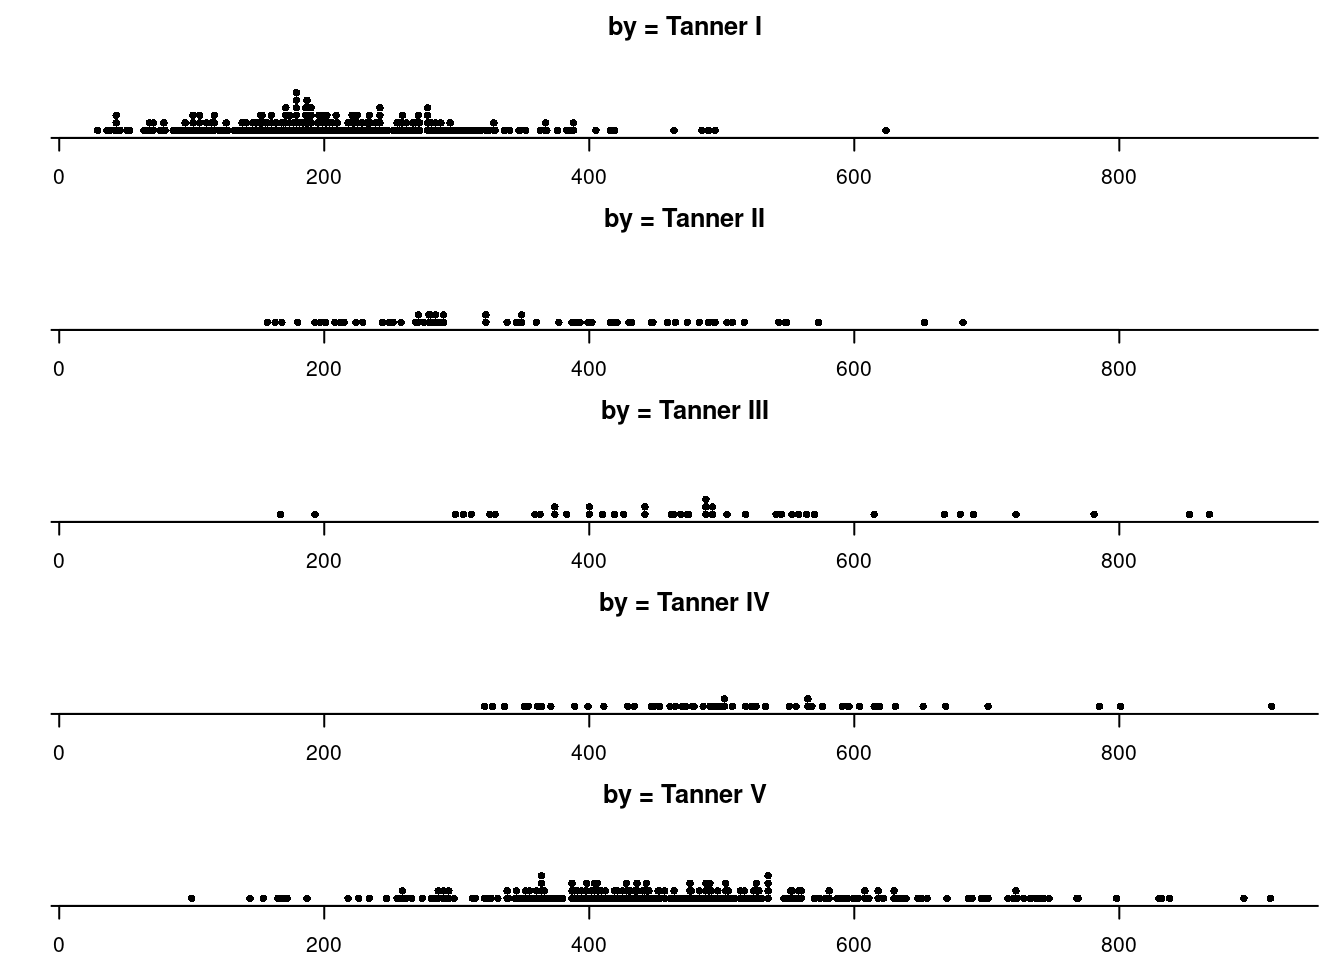 Diagrama de pontos de igf1 para cada categoria de Tanner.